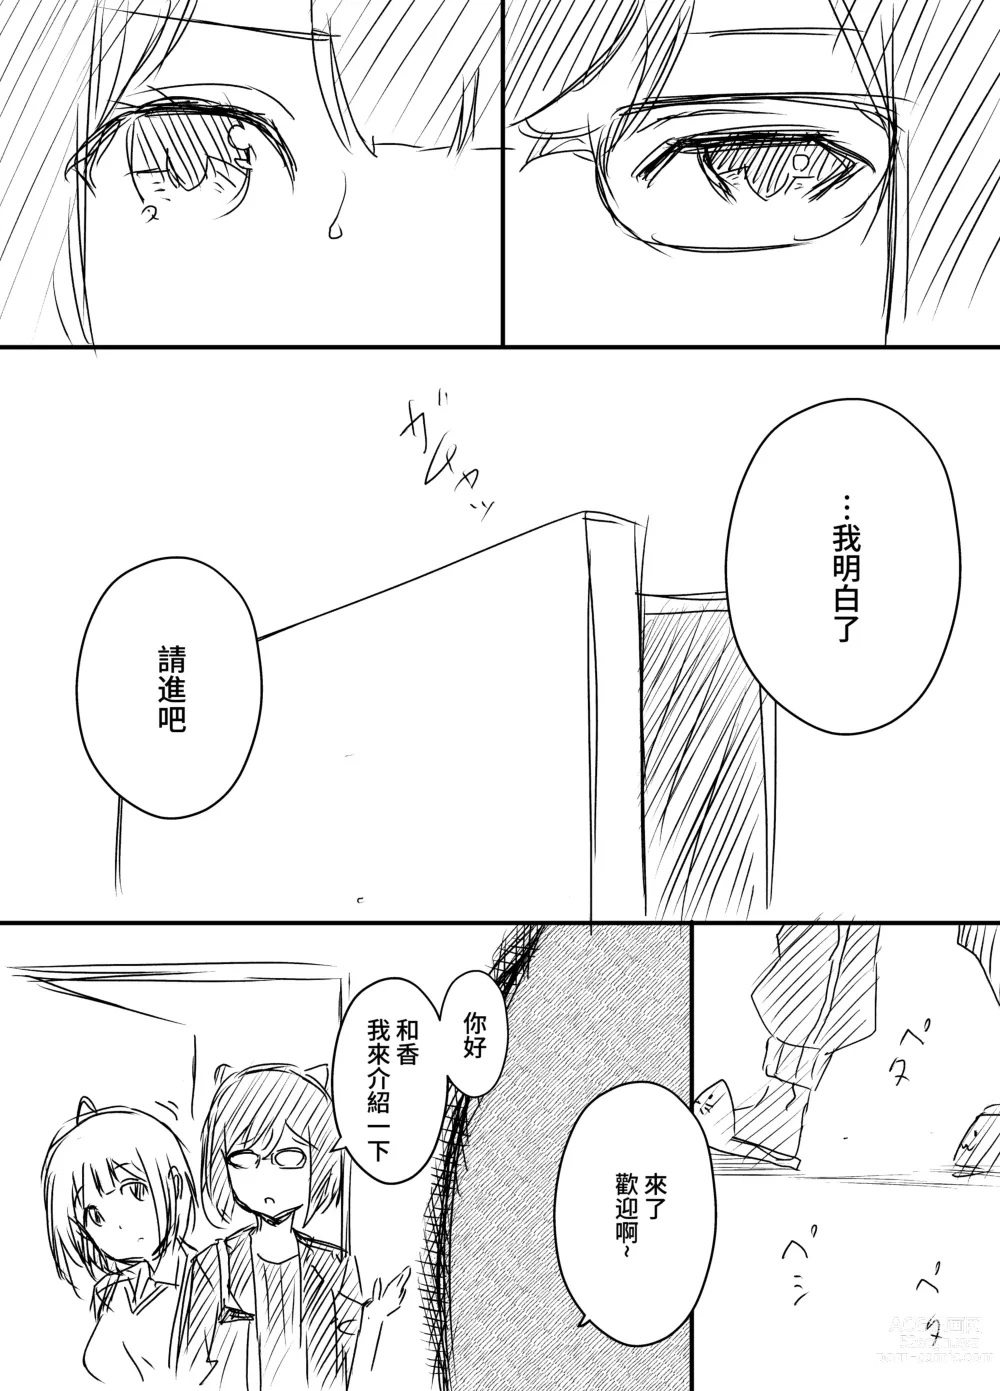 Page 11 of doujinshi Ura Kenshuu